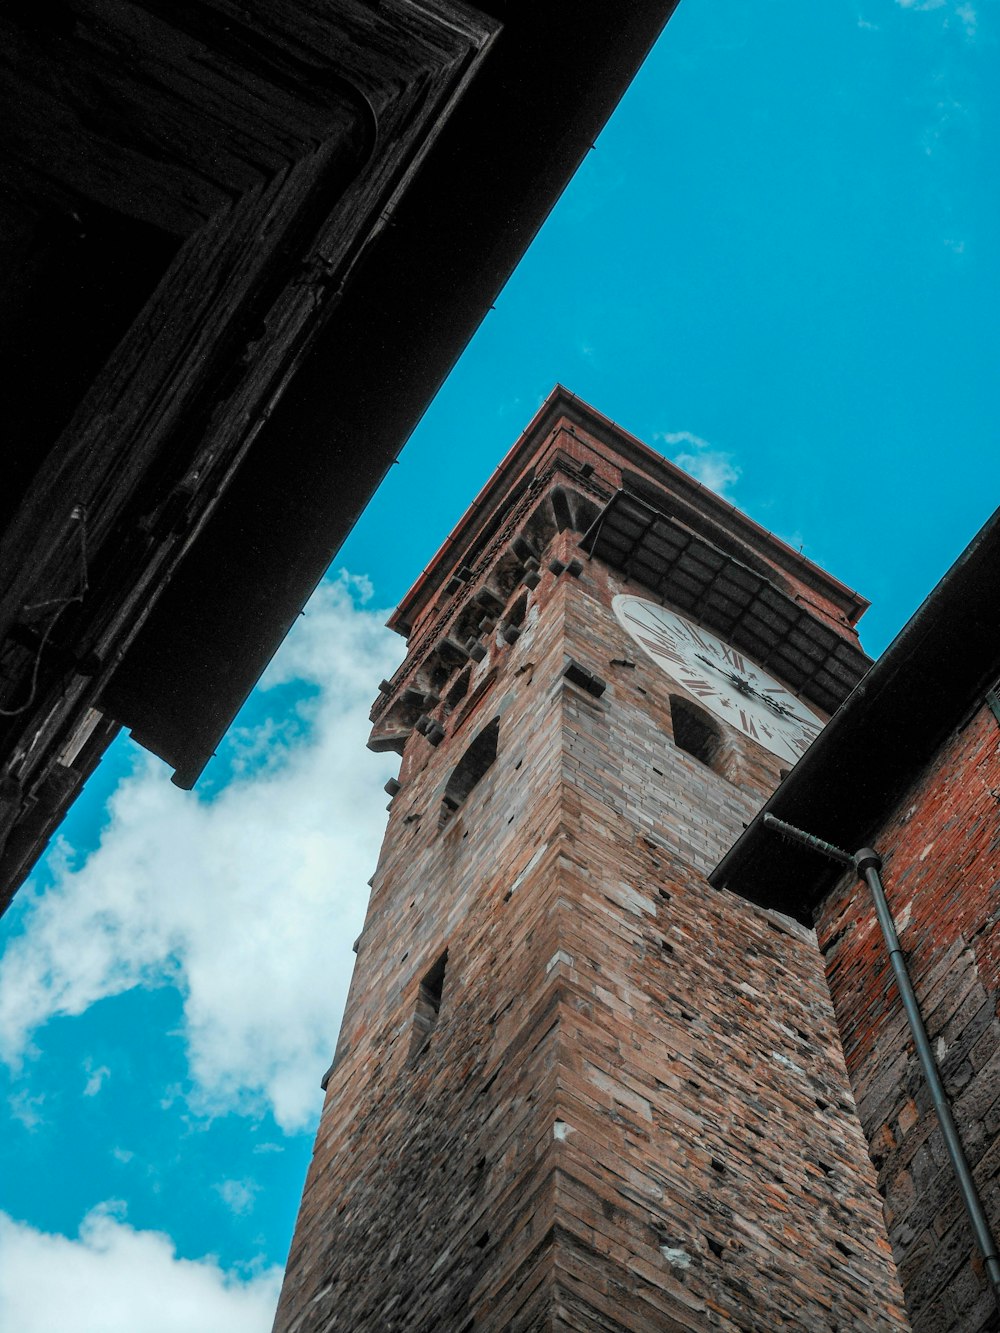 낮 동안 푸른 하늘 아래 갈색 벽돌 건물의 낮은 각도 사진